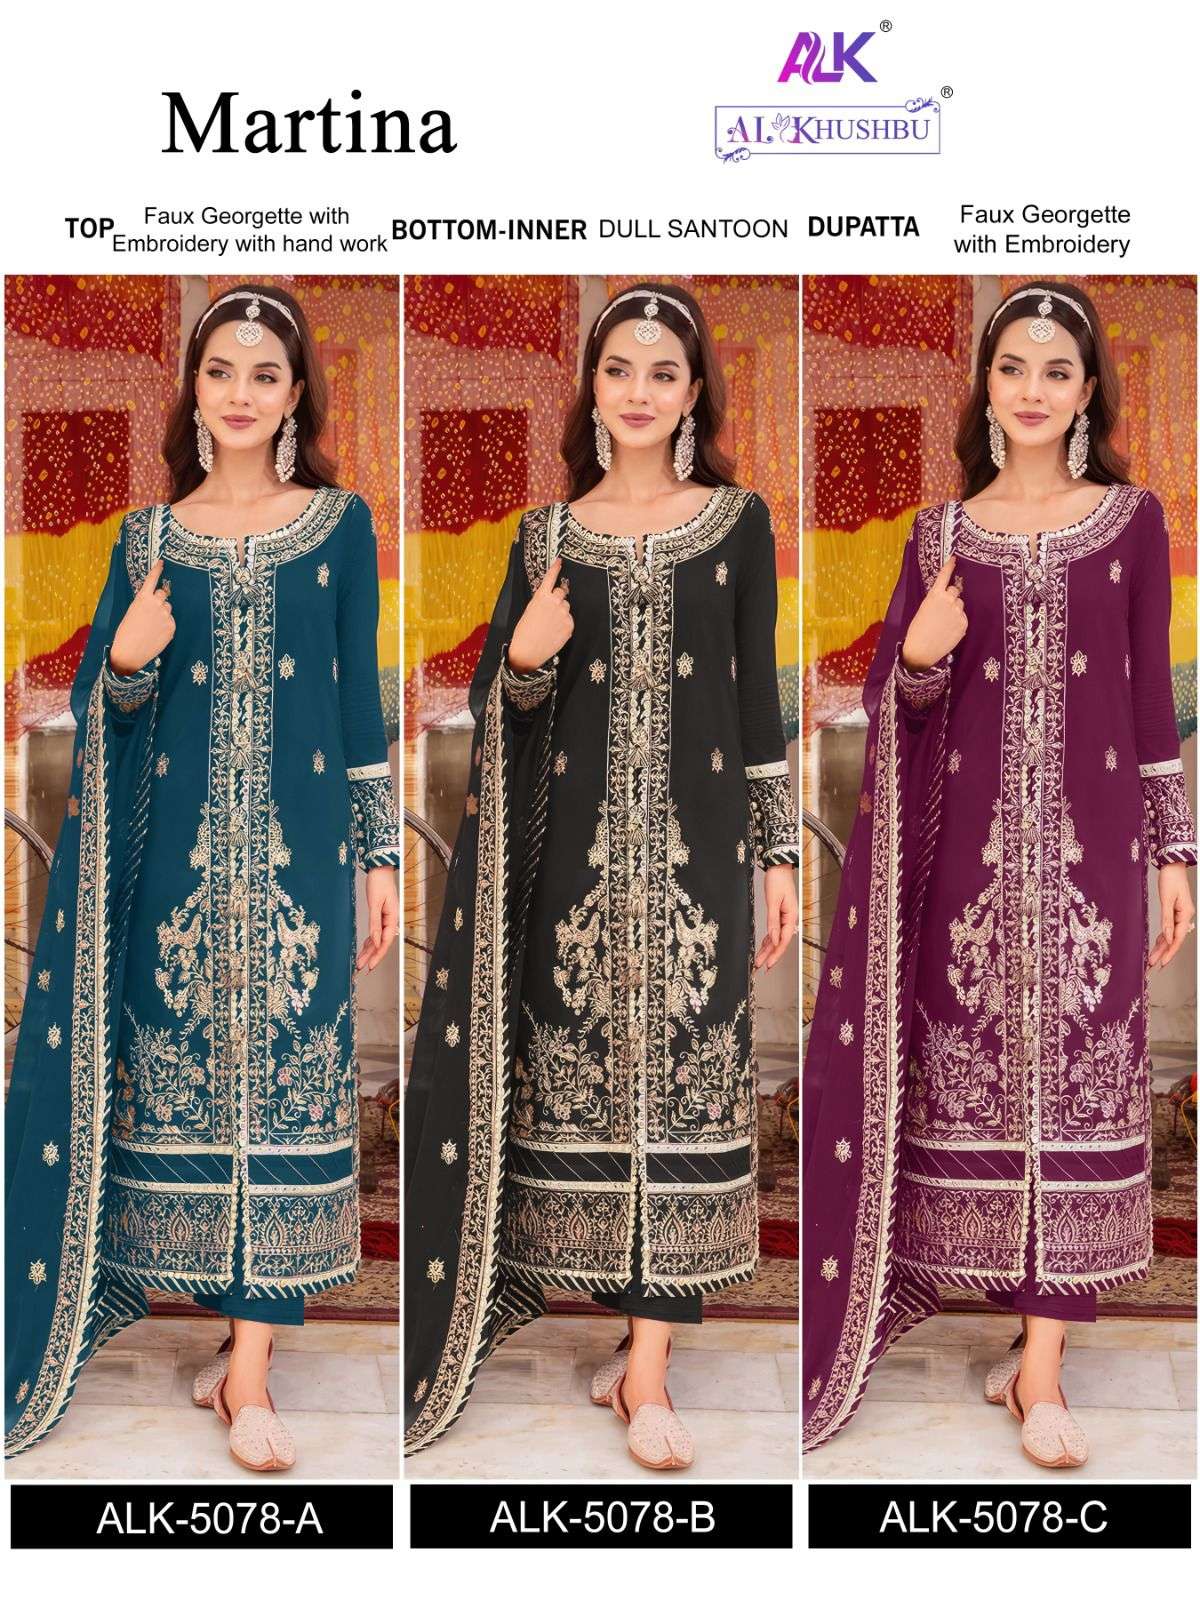 al khushbu martina 5078 colour series designer pakistani salwar kameez wholesaler surat gujarat